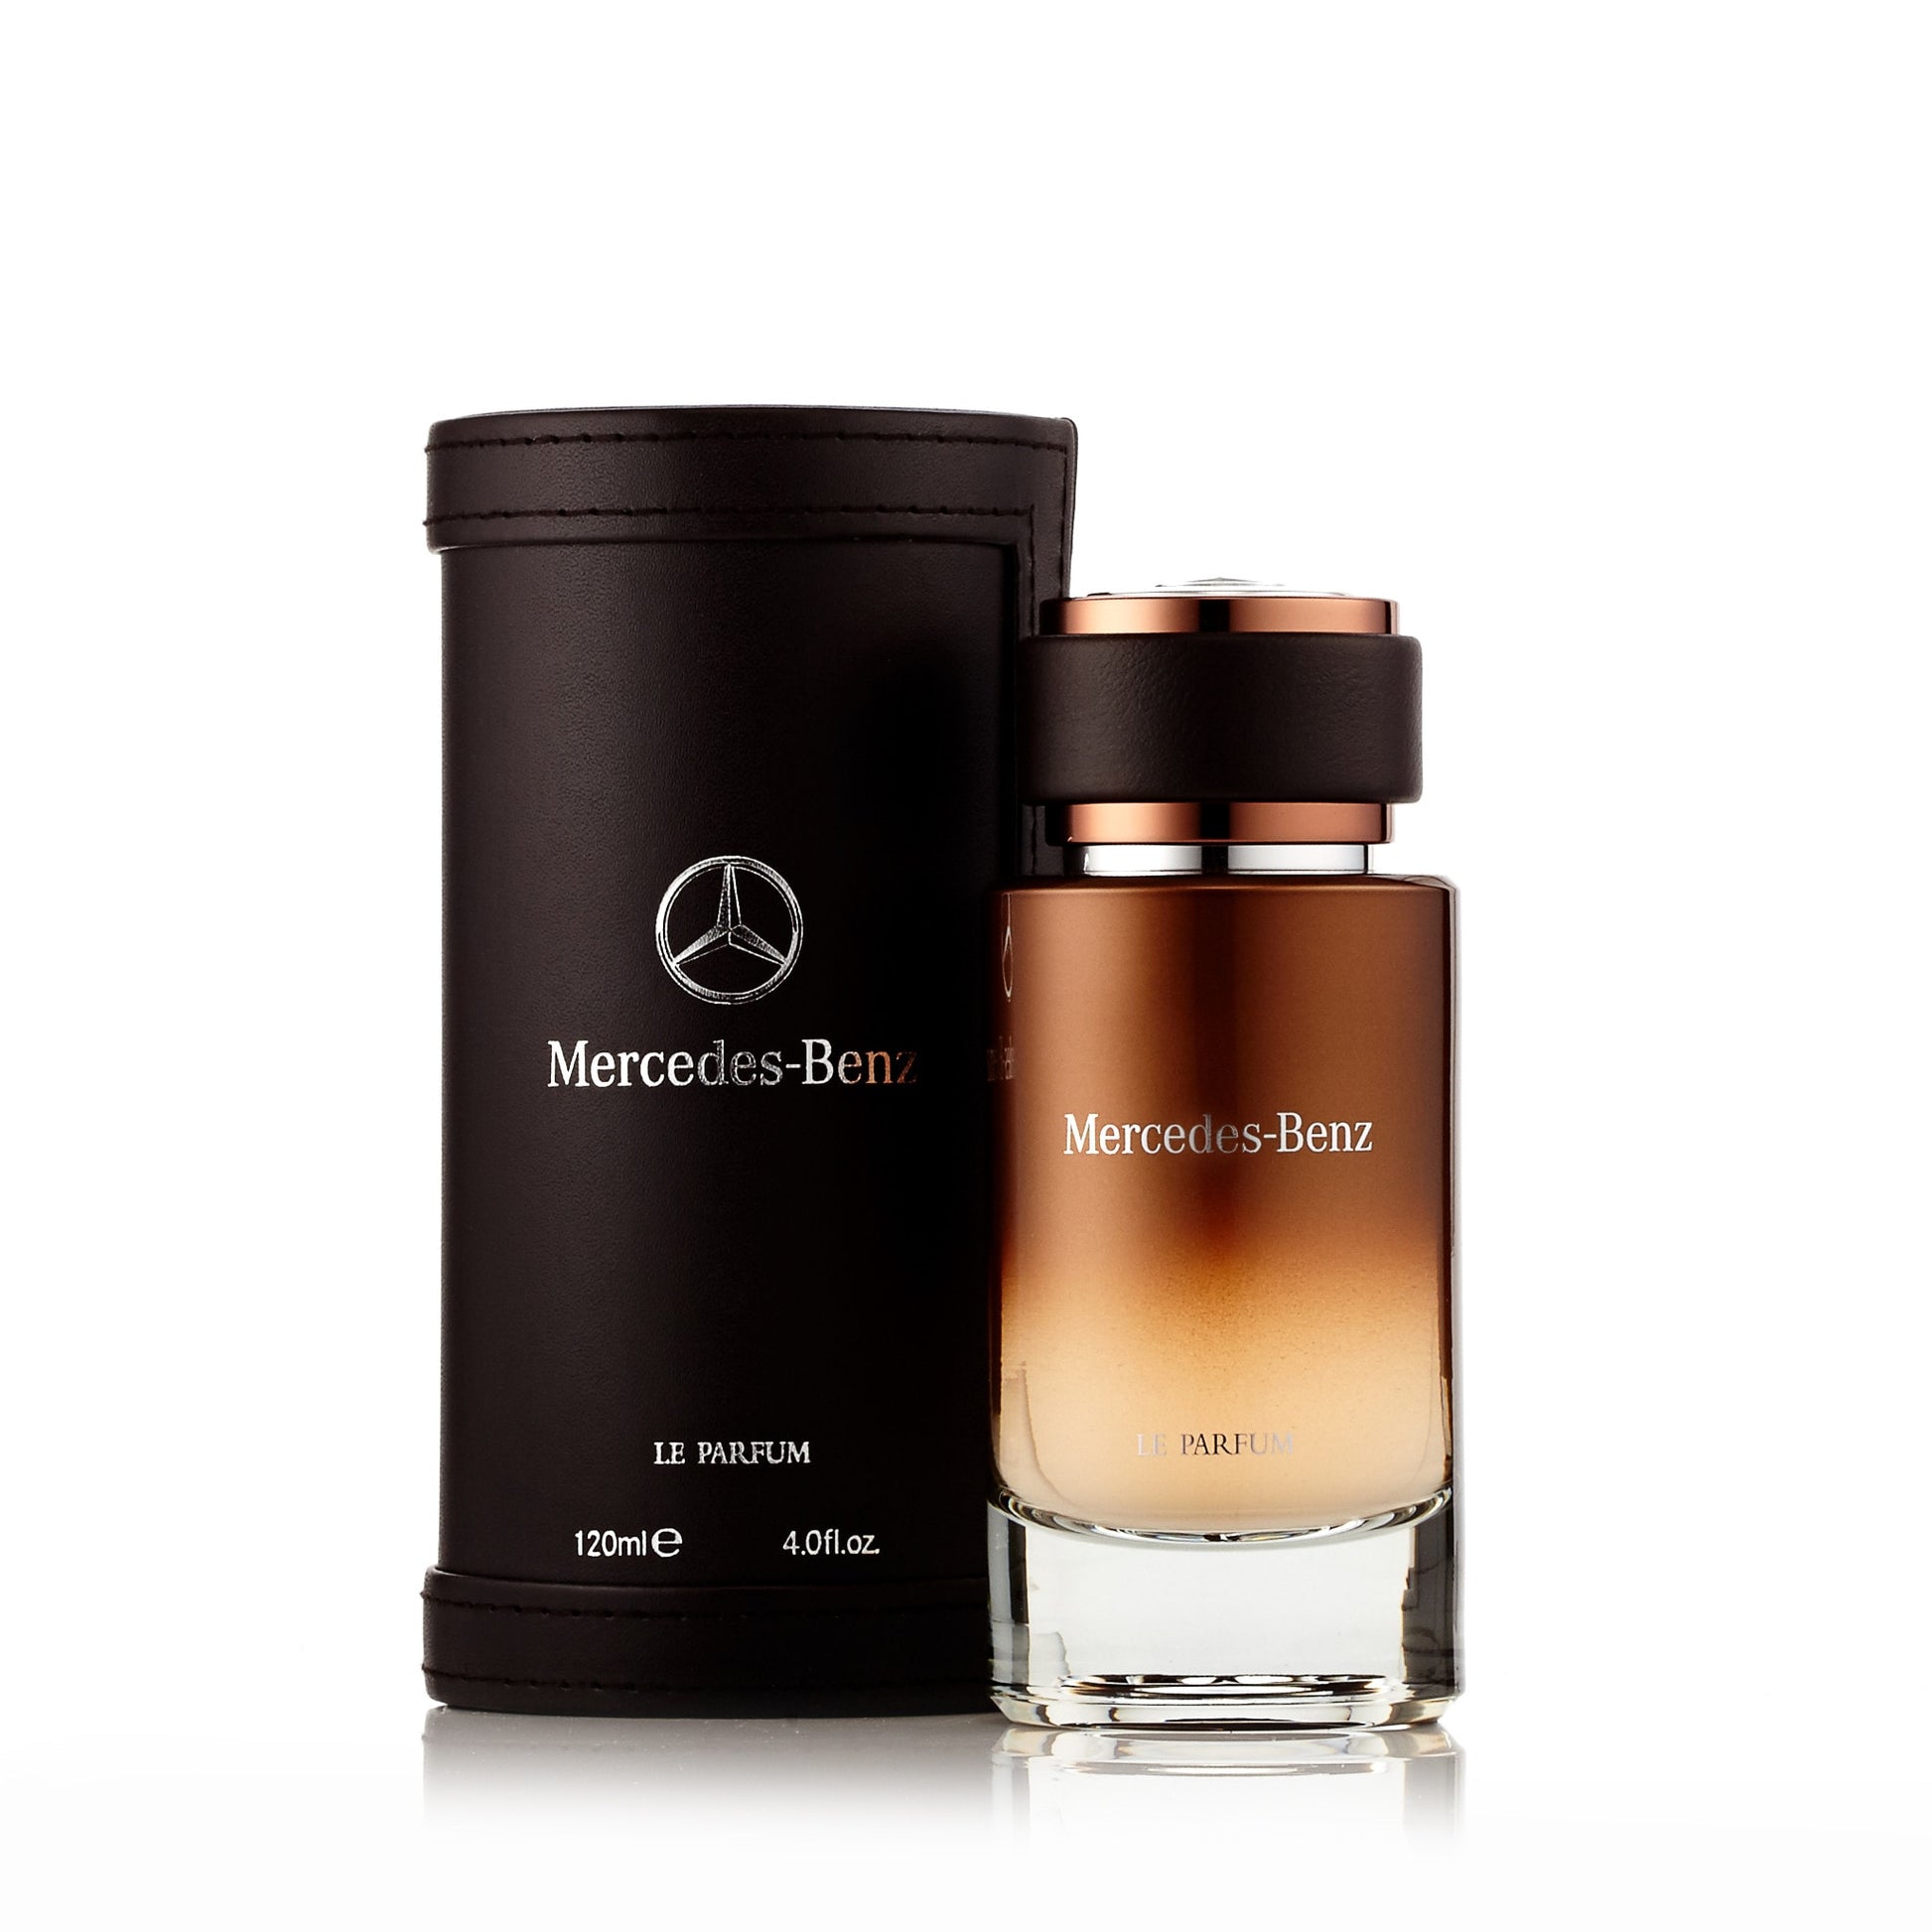 Le Parfum Eau de Parfum Spray for Men by Mercedes-Benz, Product image 2